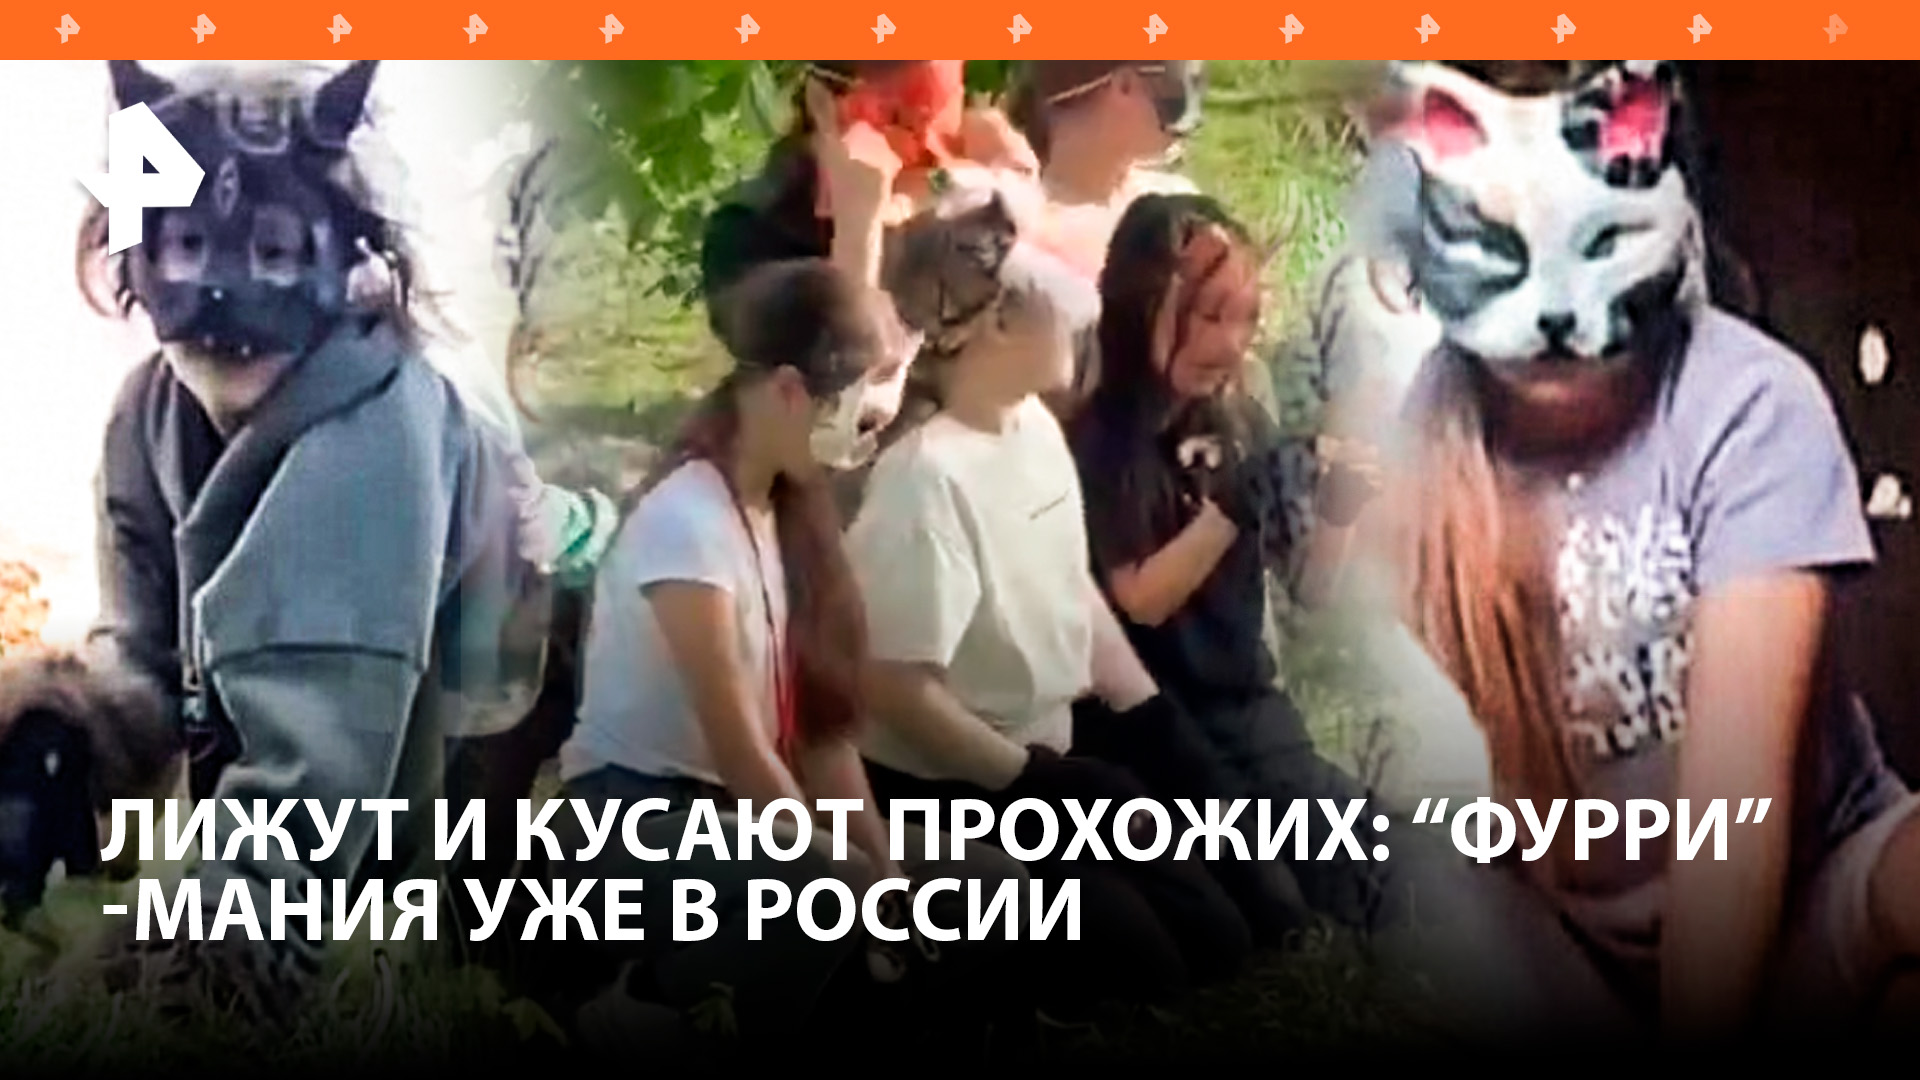 Зоошиза в России: дети встают на колени и кусают. "Фурри" и "квадроби" — в чем отличия?